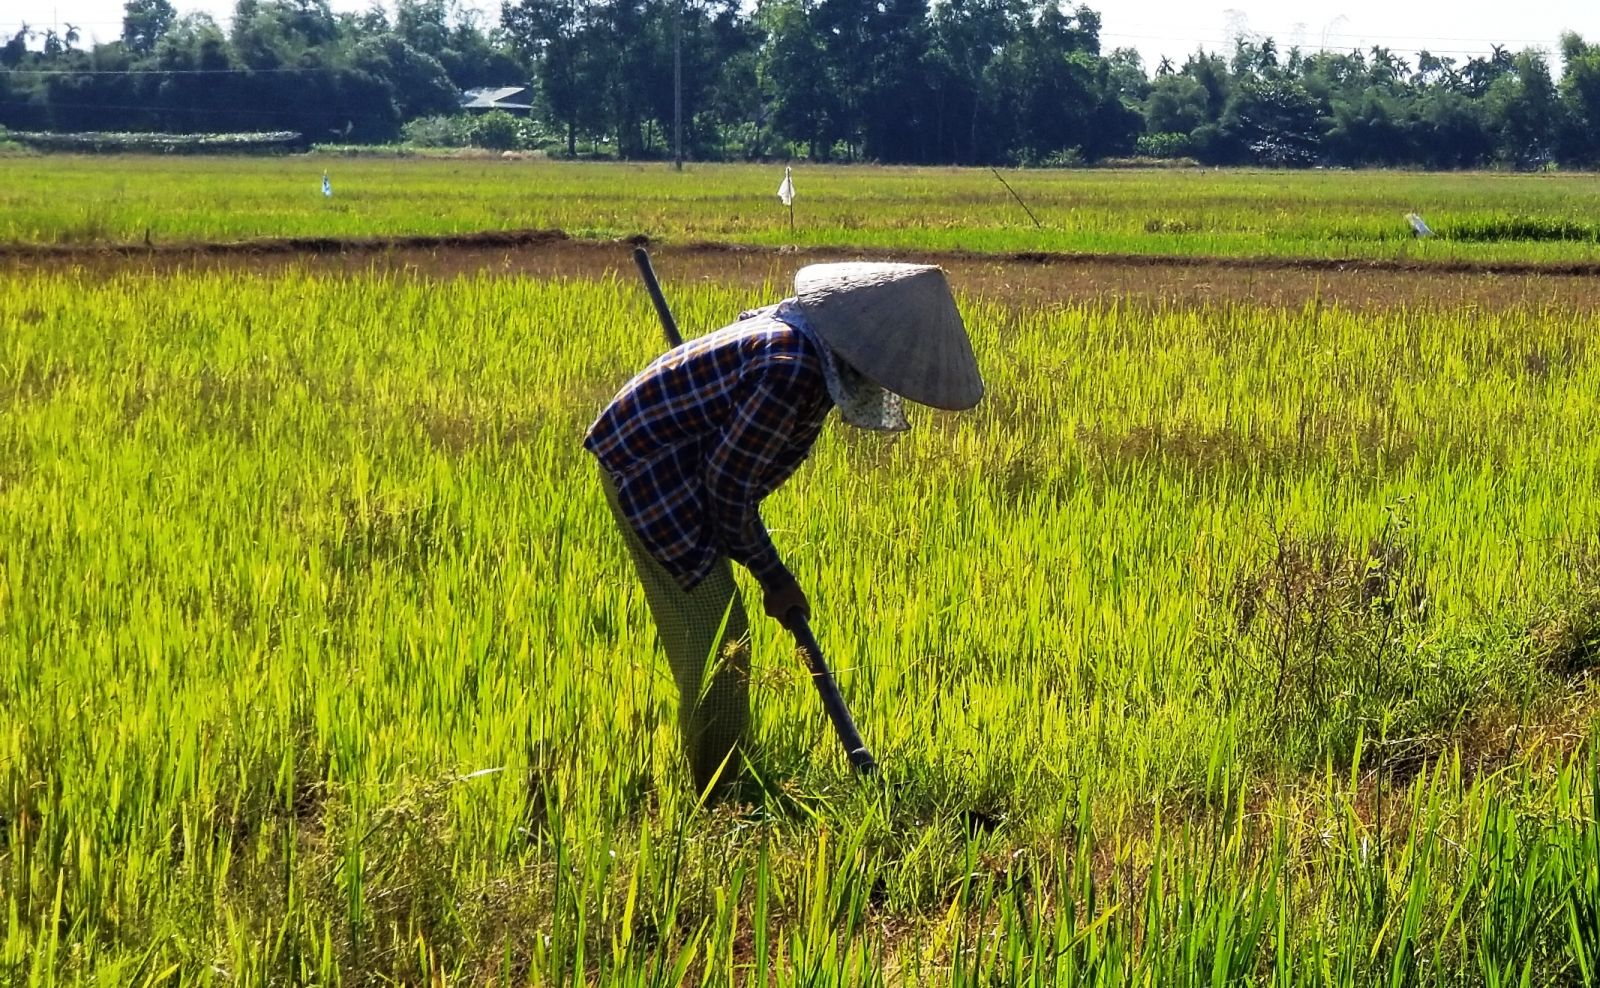 Mô hình nông nghiệp công nghệ cao nào cho năm 2017  GlobalGAP Thực  hành tốt nông nghiệp toàn cầu  GlobalGAP Việt Nam